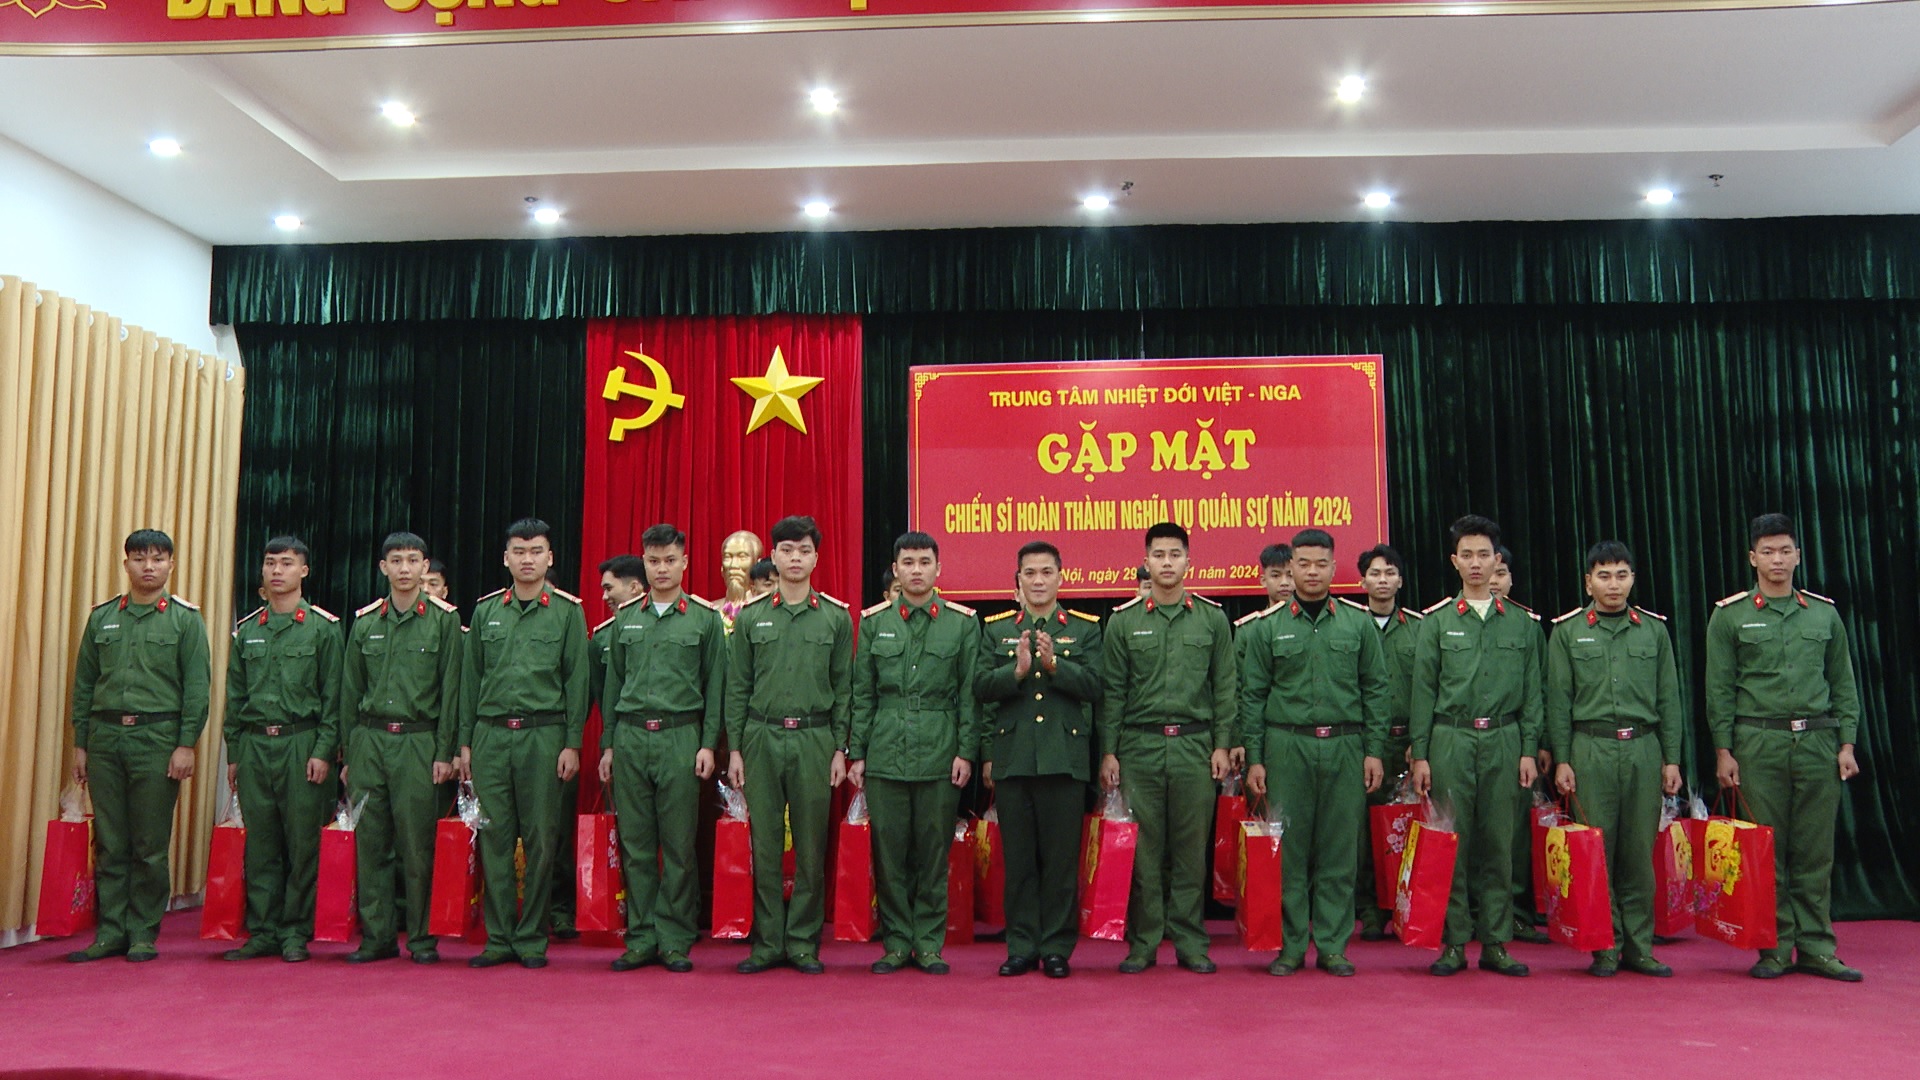 Trung tâm Nhiệt đới Việt - Nga tổ chức gặp mặt chia tay chiến sĩ xuất ngũ năm 2024